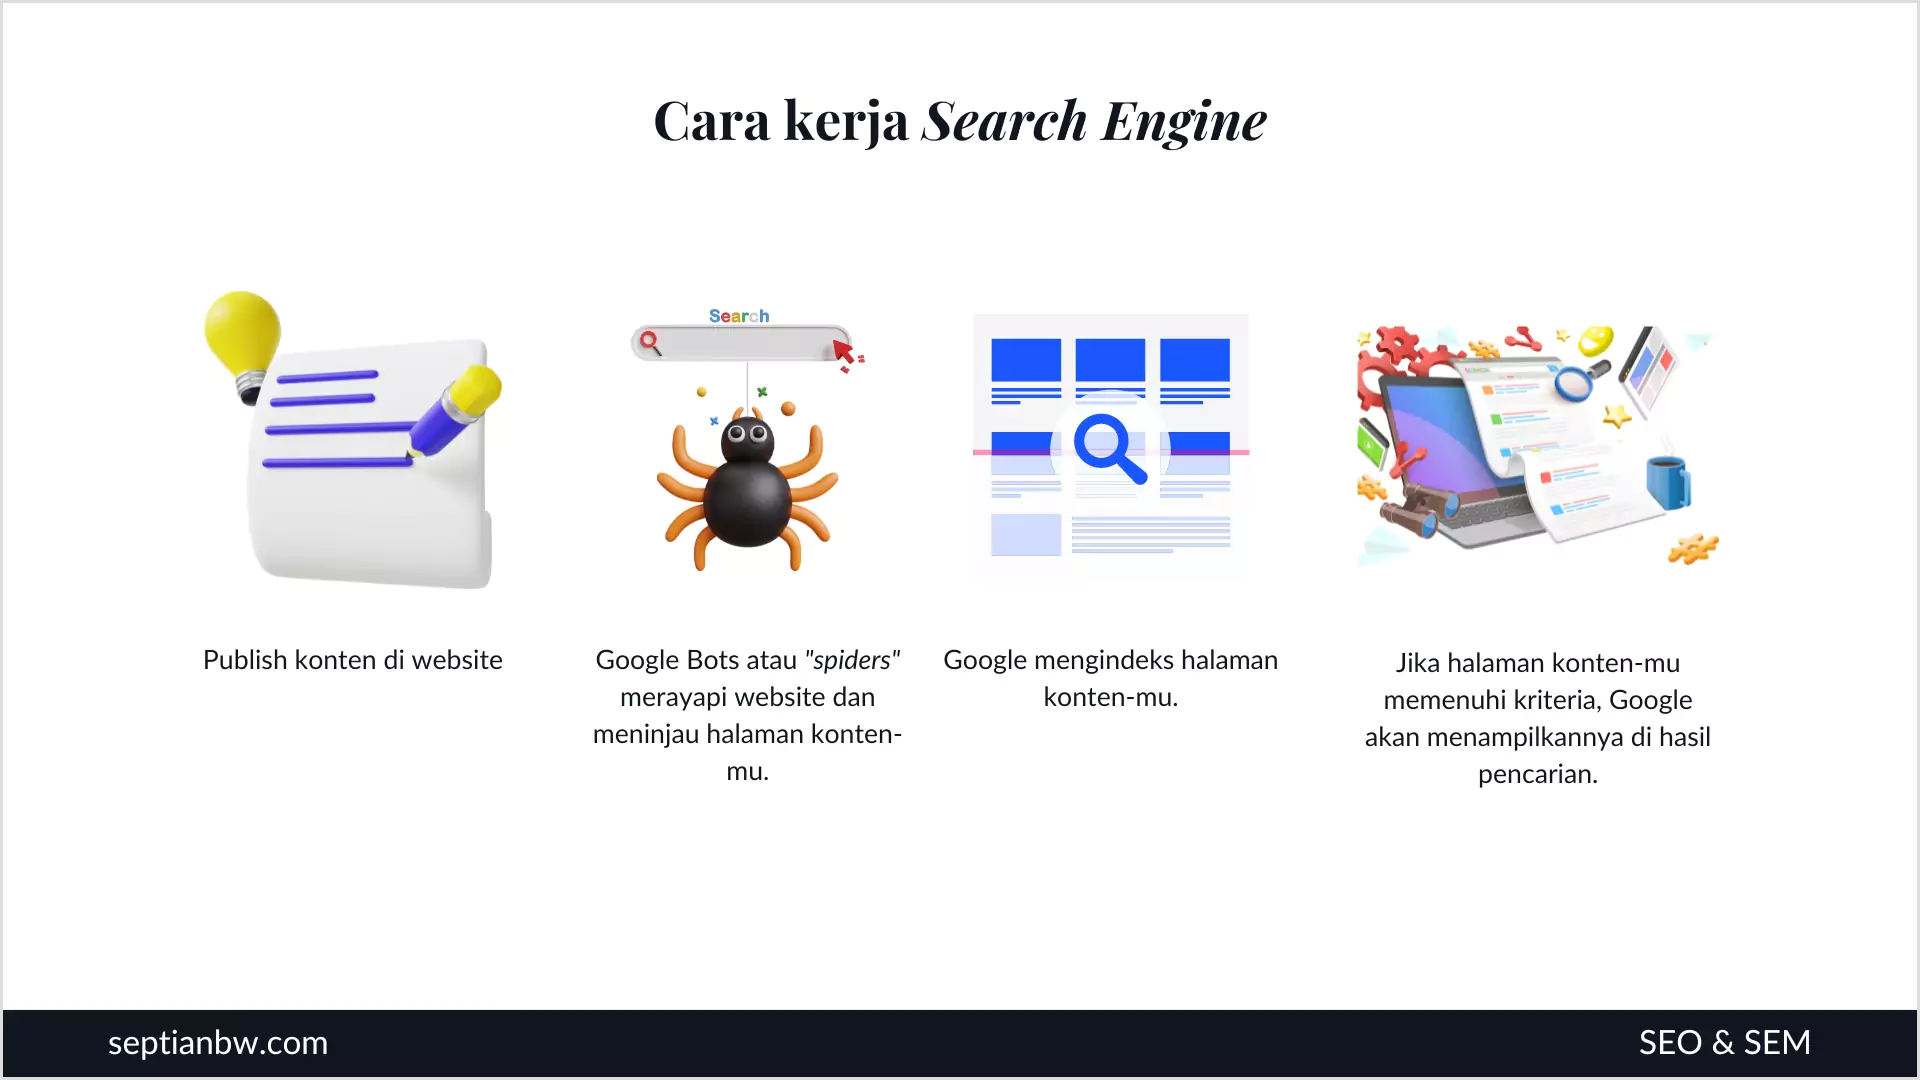 Cara kerja Search Engine